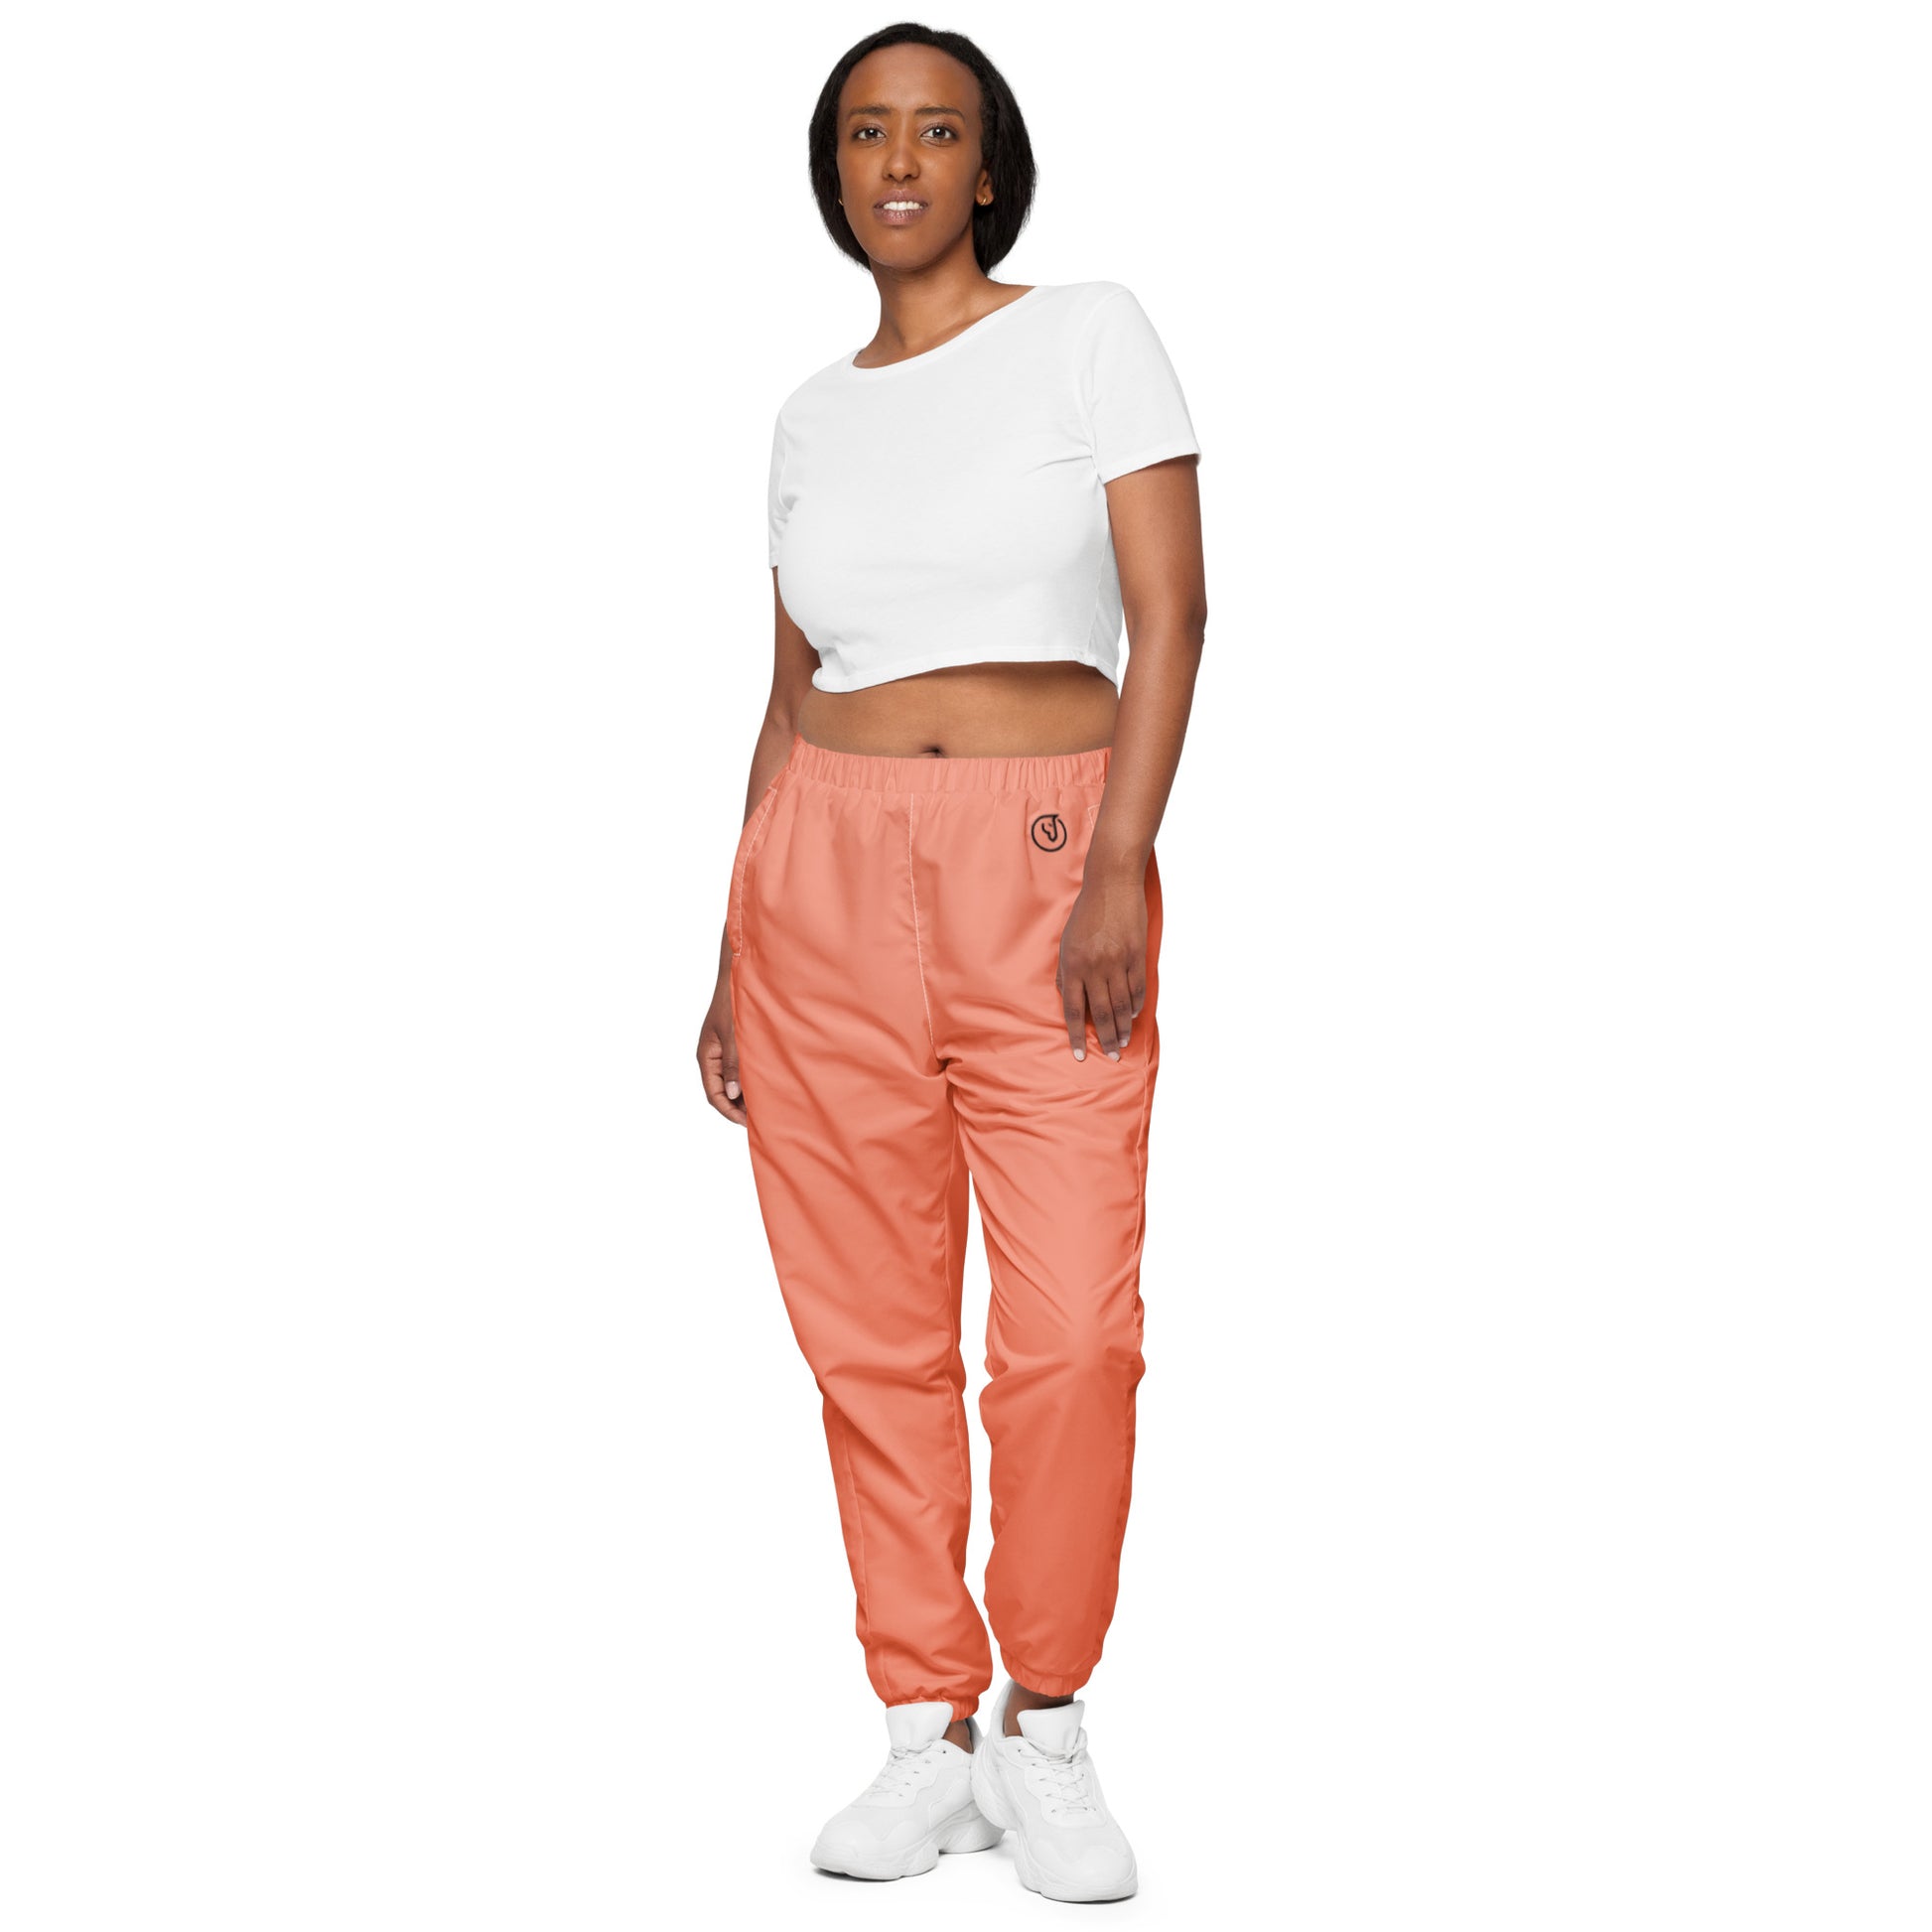 https://mireillefineart.com/cdn/shop/products/Humble-Sportswear-Women-s-Coral-Lightweight-Track-Pants-Mireille-Fine-Art-5237.jpg?v=1709790659&width=1946